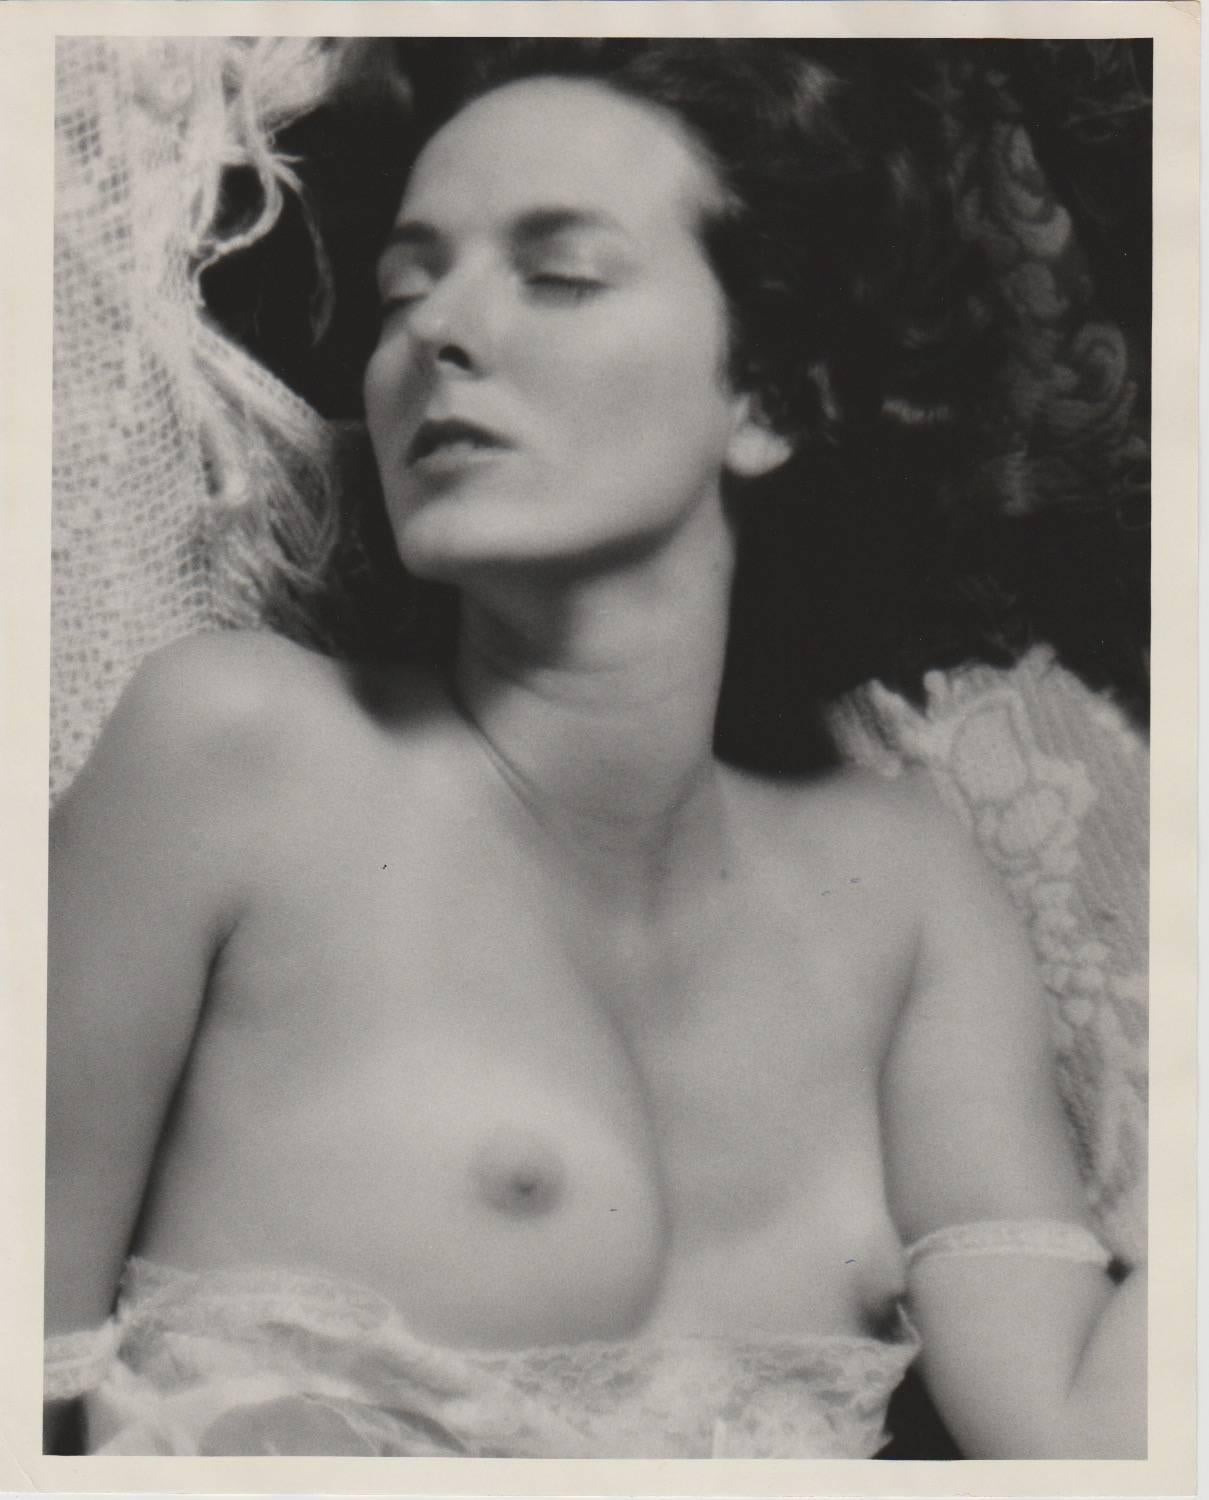 David Schoen Nude Photograph - Nude 